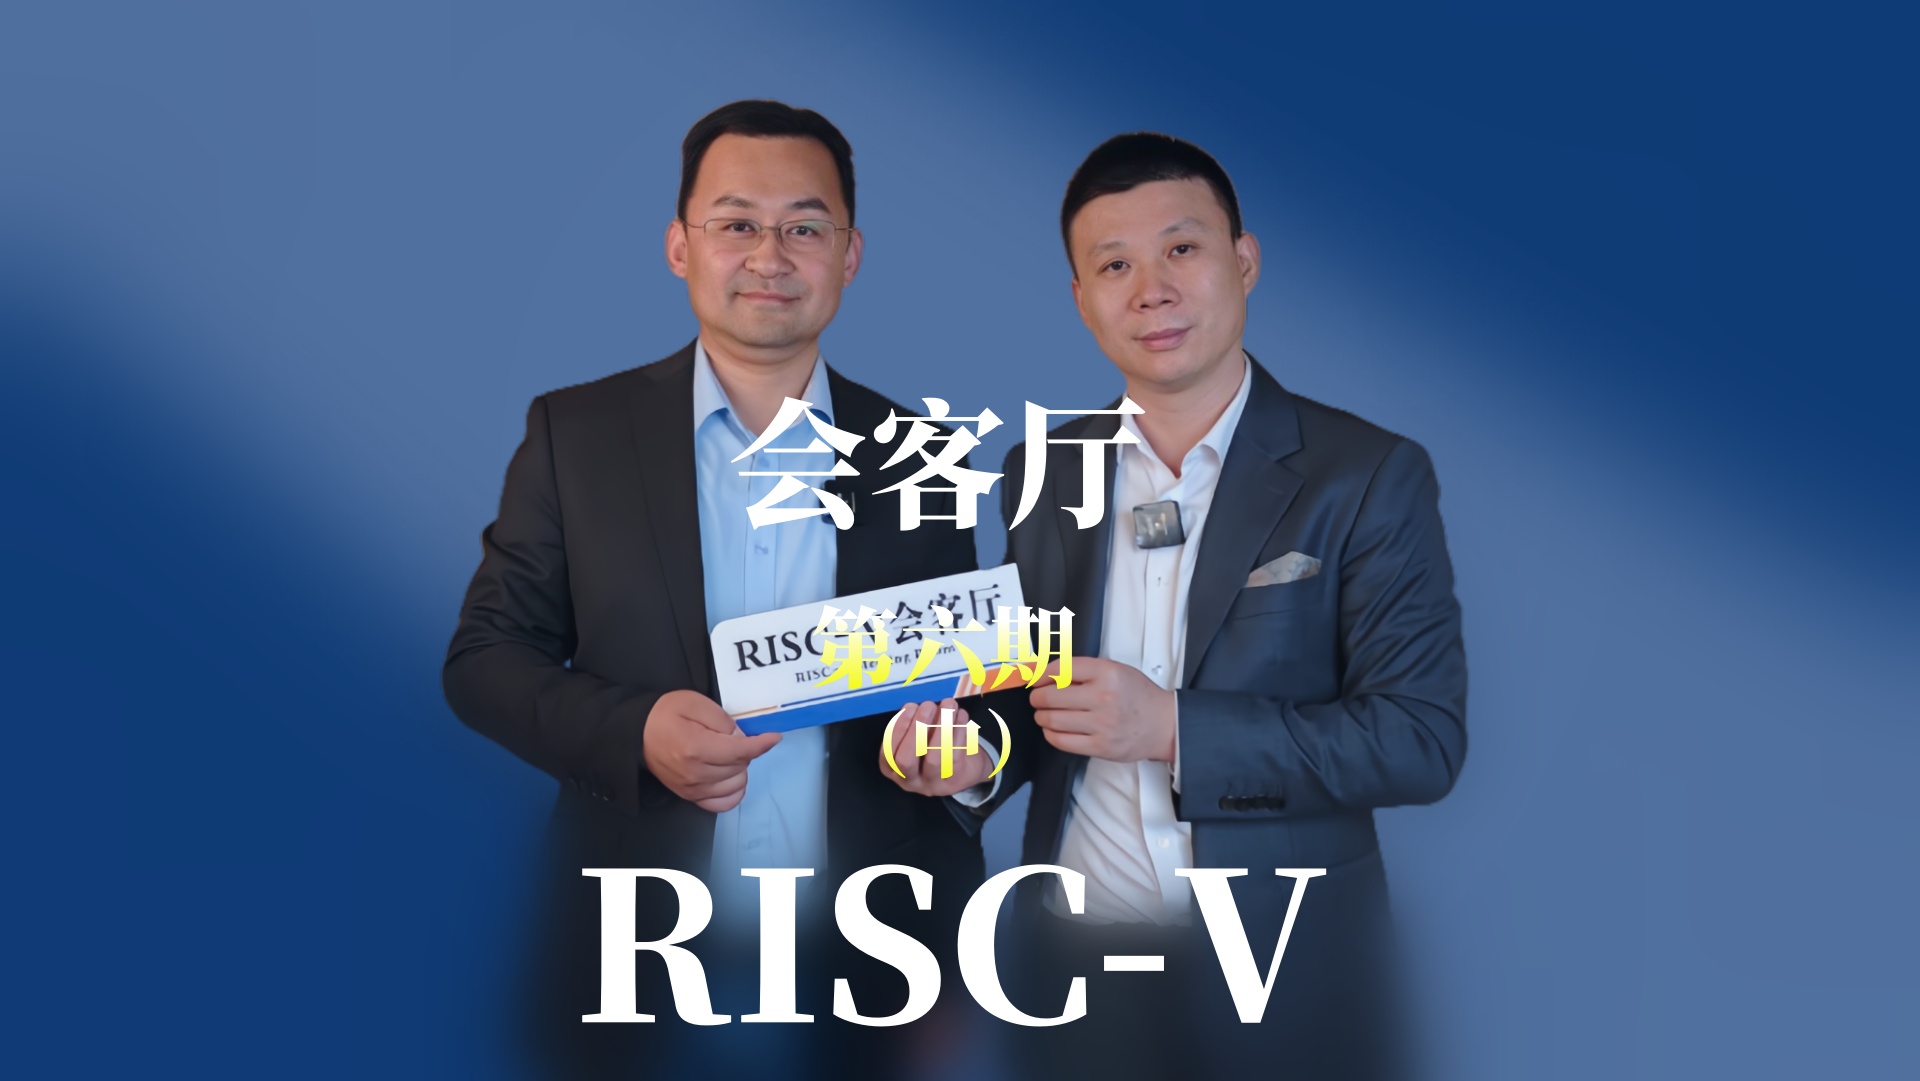 【第六期中】邀請江蘇潤開鴻的副總裁于大伍共同探索OpenHarmony 與#RISCV 融合發展的趨勢與未來